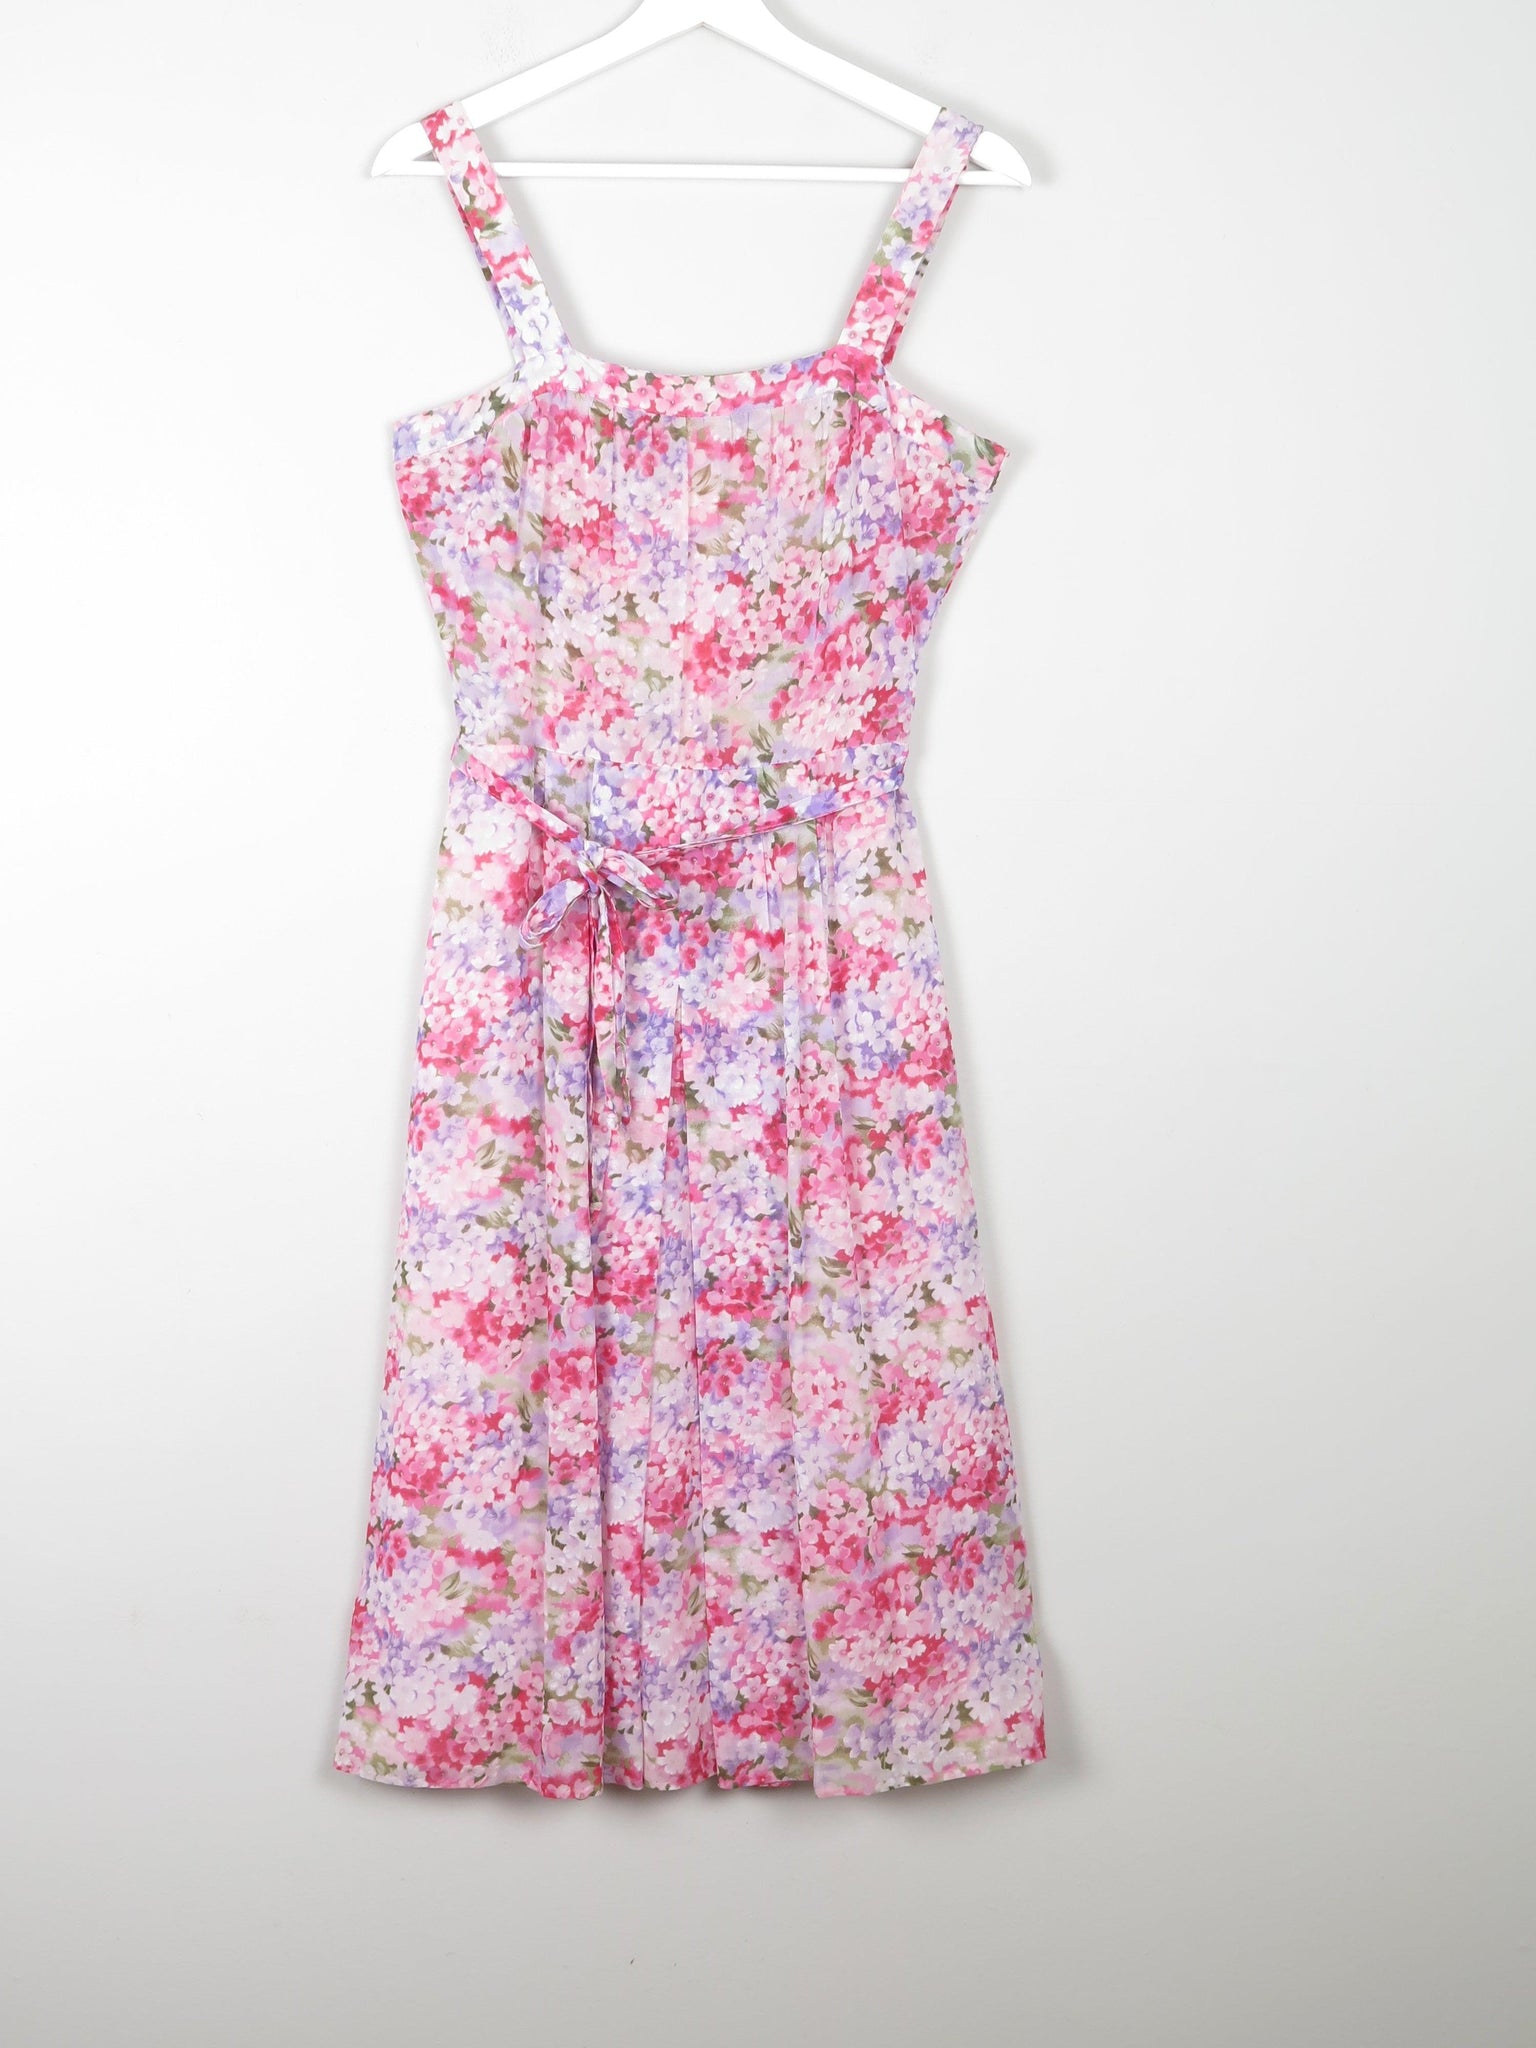 Floral Printed Pink Summer Vintage  Dress 10 - The Harlequin